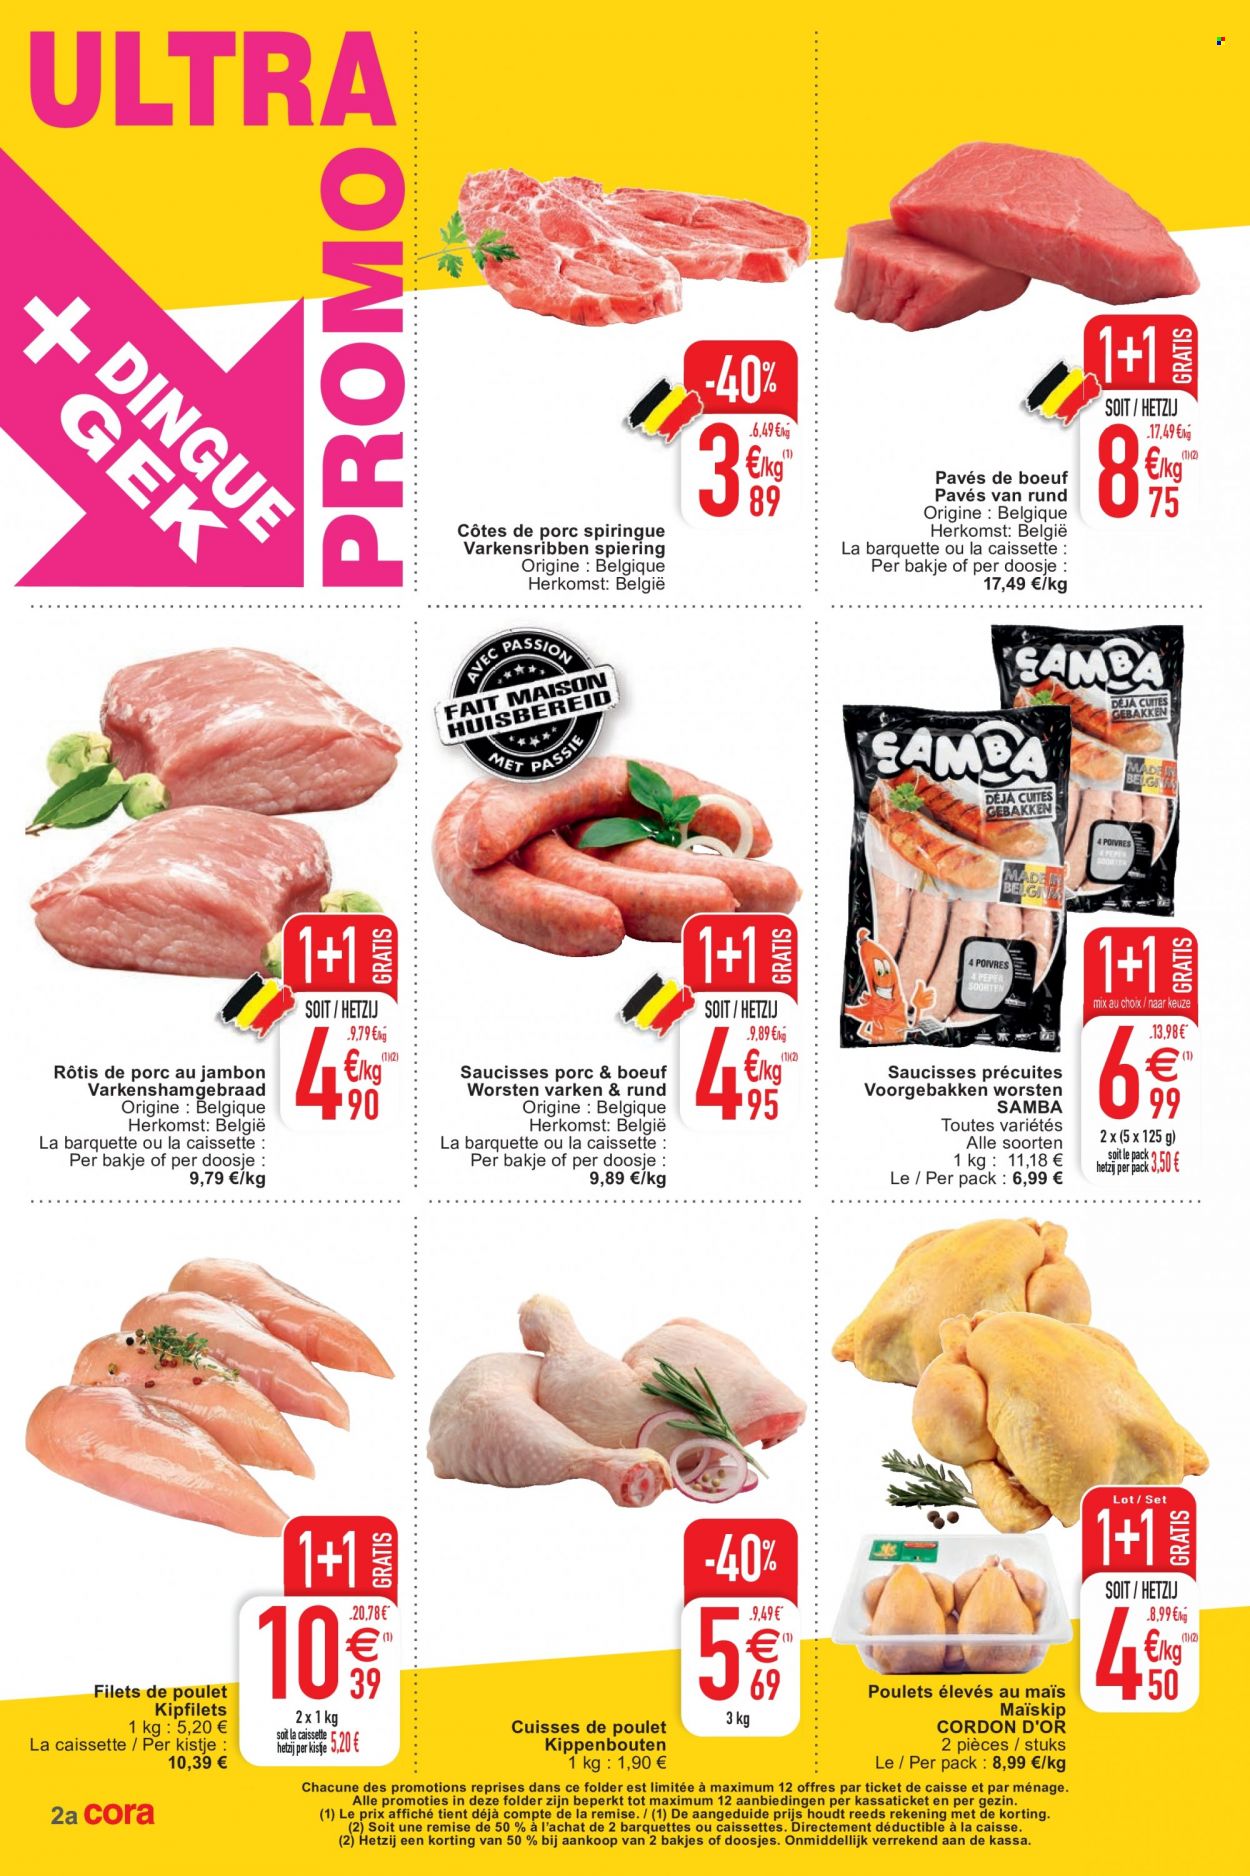 thumbnail - Catalogue Cora - 30/11/2021 - 06/12/2021 - Produits soldés - côtes de porc, viande de porc, filet de poulet, cuisses de poulet, viande de poulet, saucisse, biscuits. Page 2.